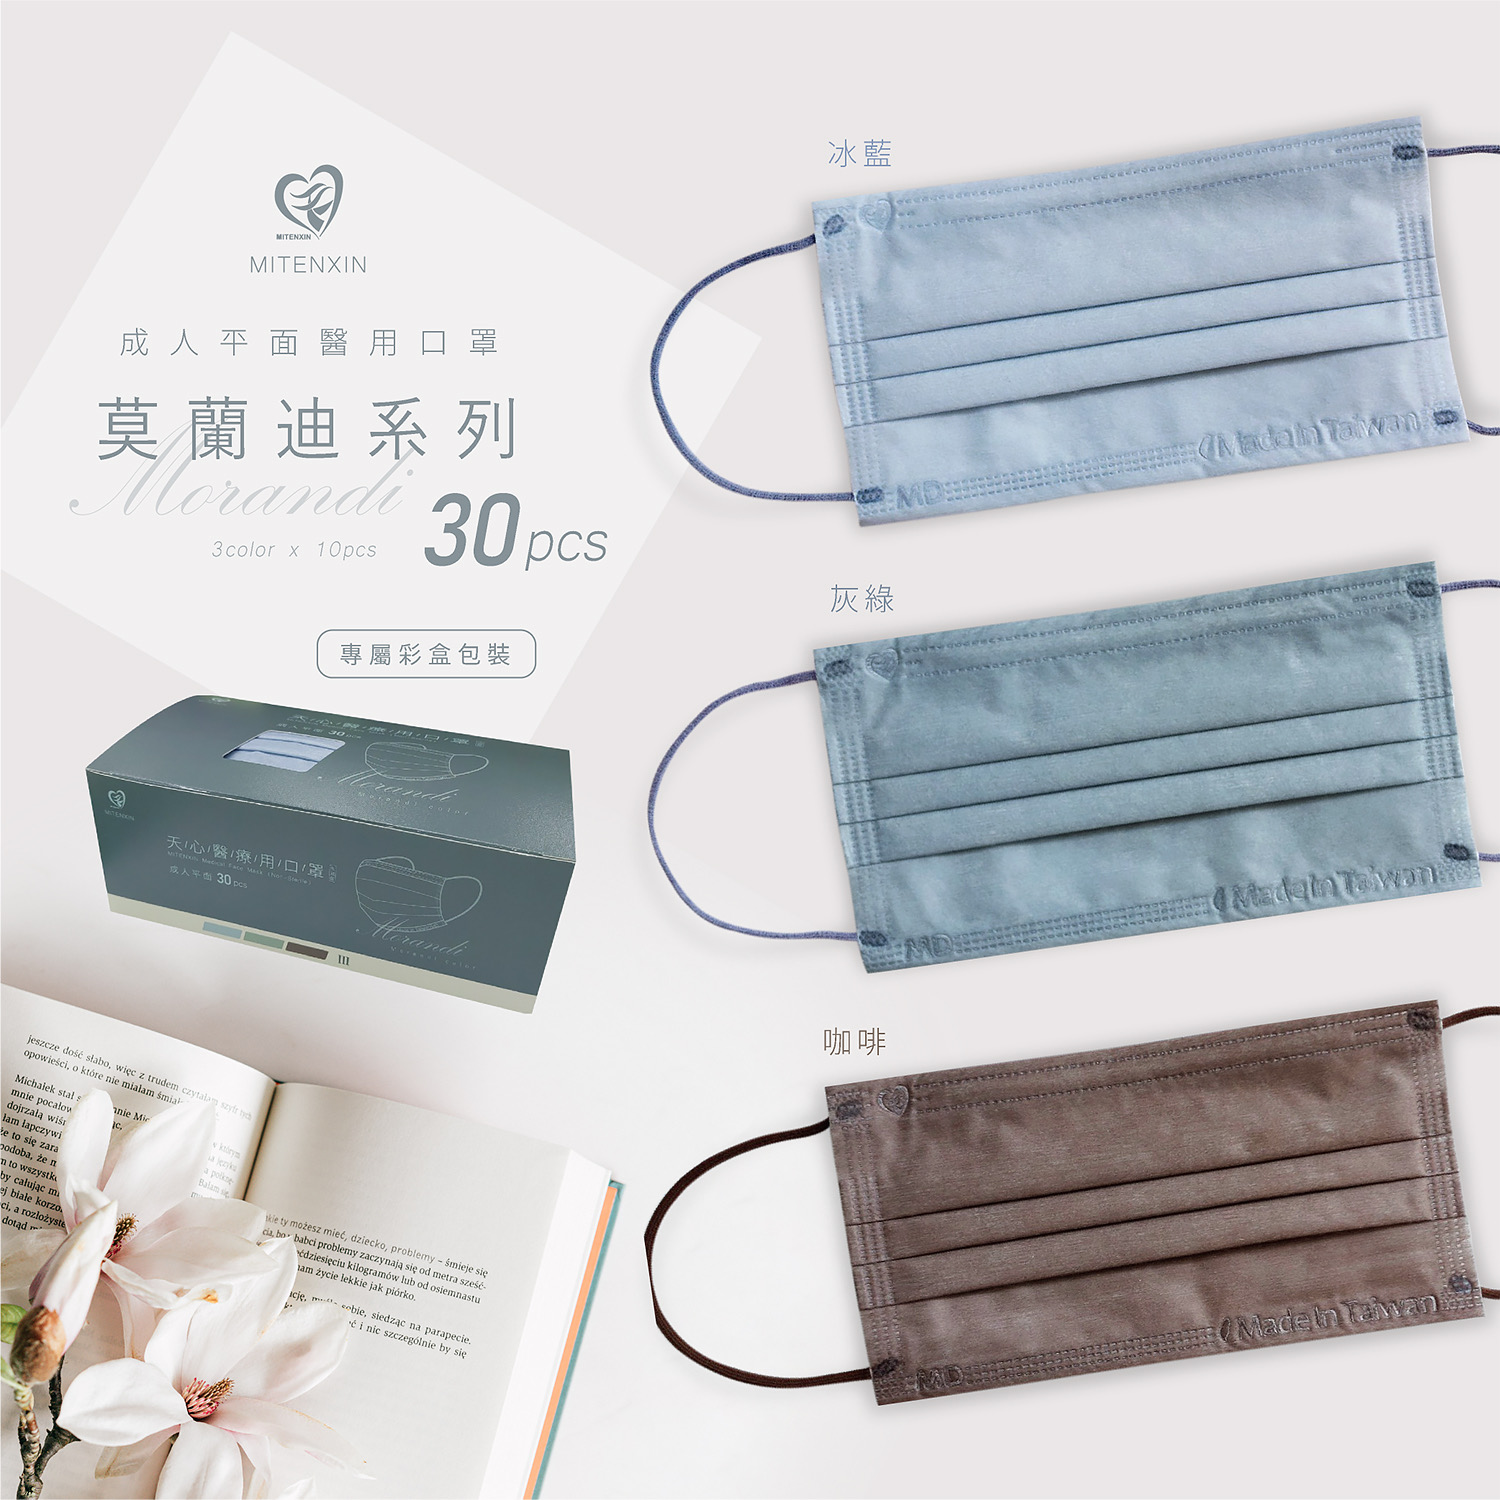  【天心】莫蘭迪滿版醫療口罩 30片/盒